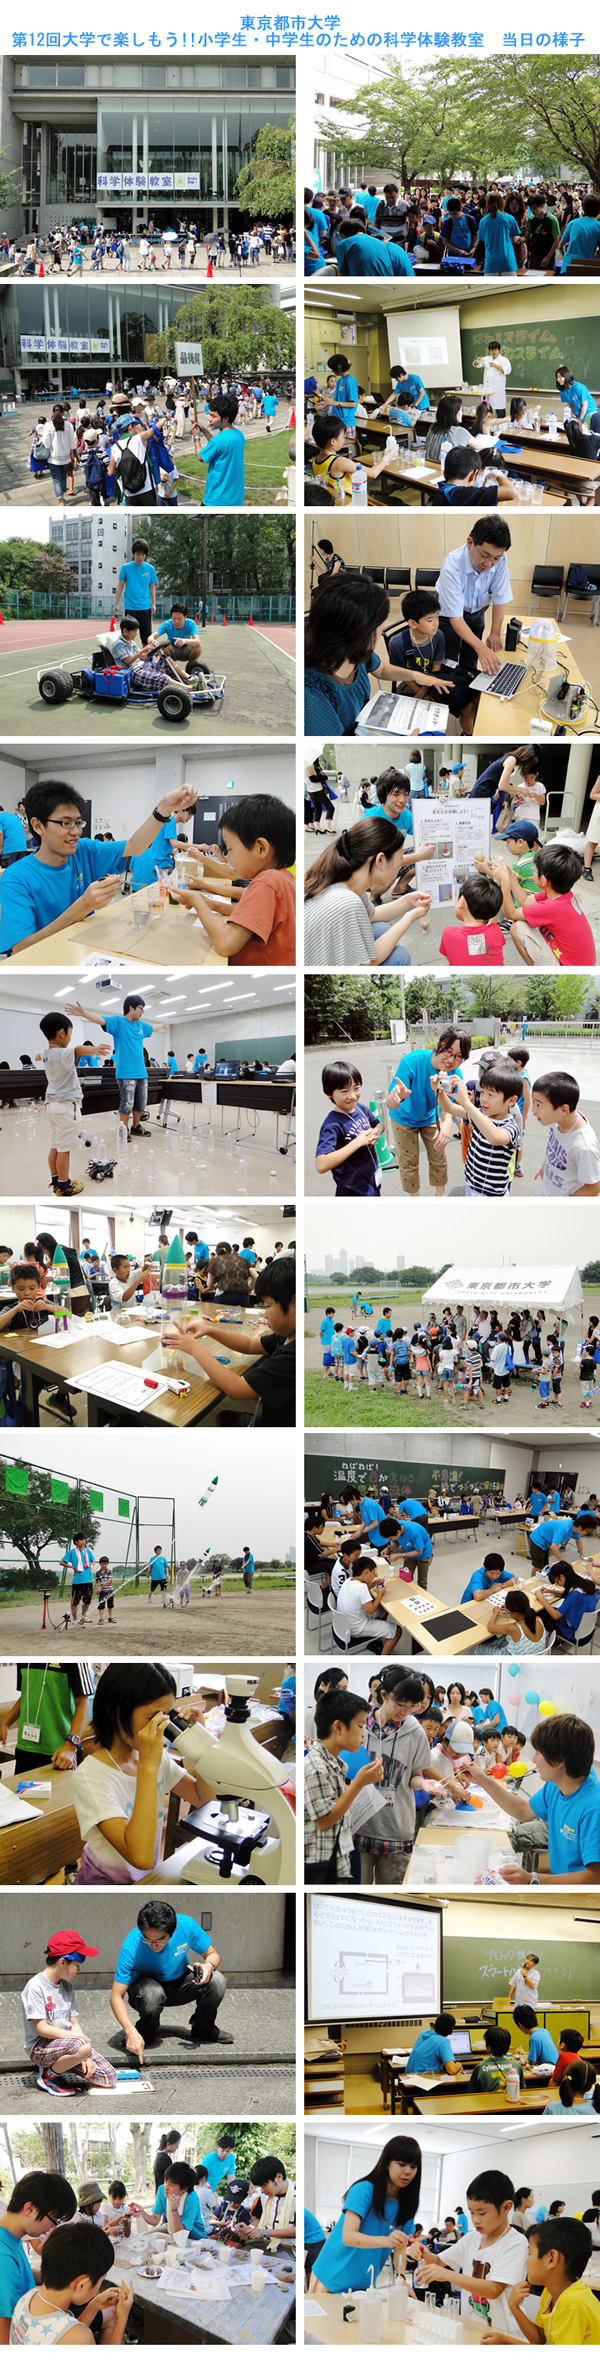 東京都市大学において「第12回 大学で楽しもう!!小学生・中学生のための科学体験教室」が開催されました